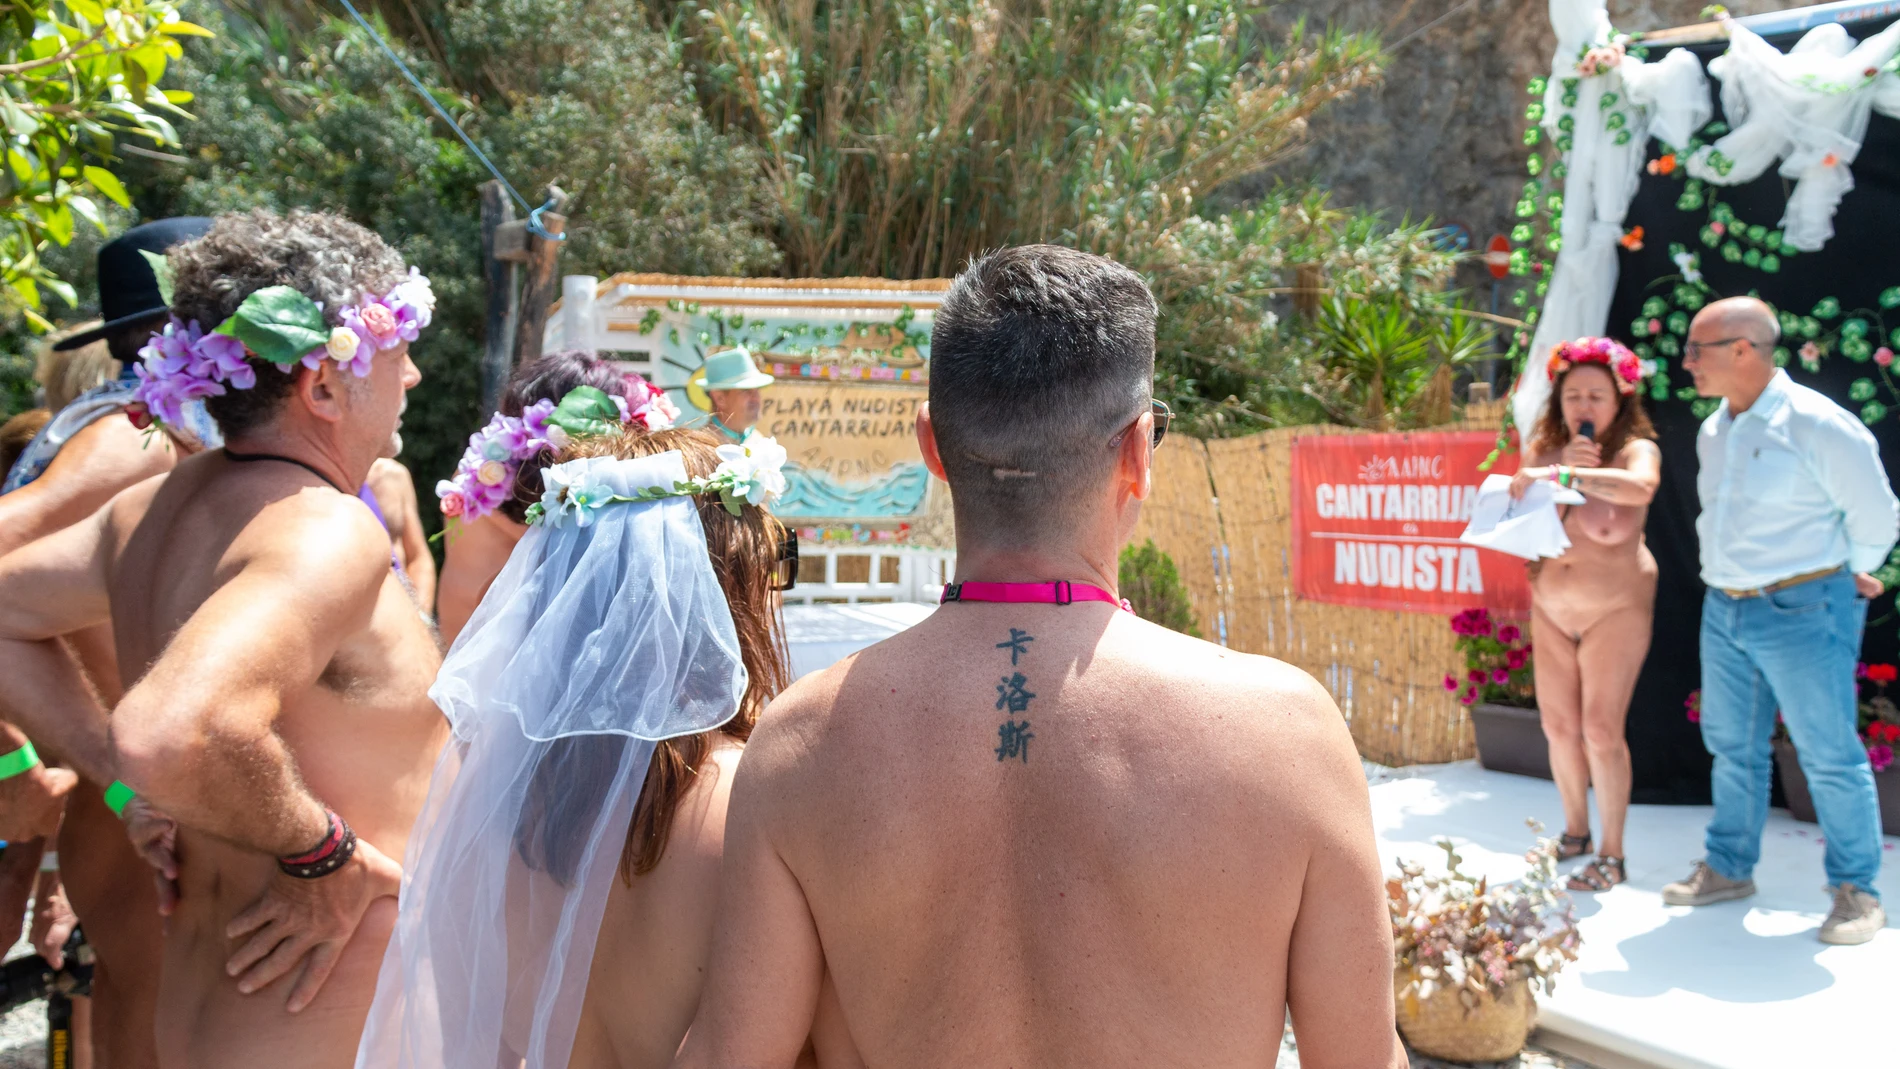 Un momento de la boda nudista multitudinaria que se ha celebrado hoy sábado en la playa de Cantarriján (Almuñécar), en la costa de Granada